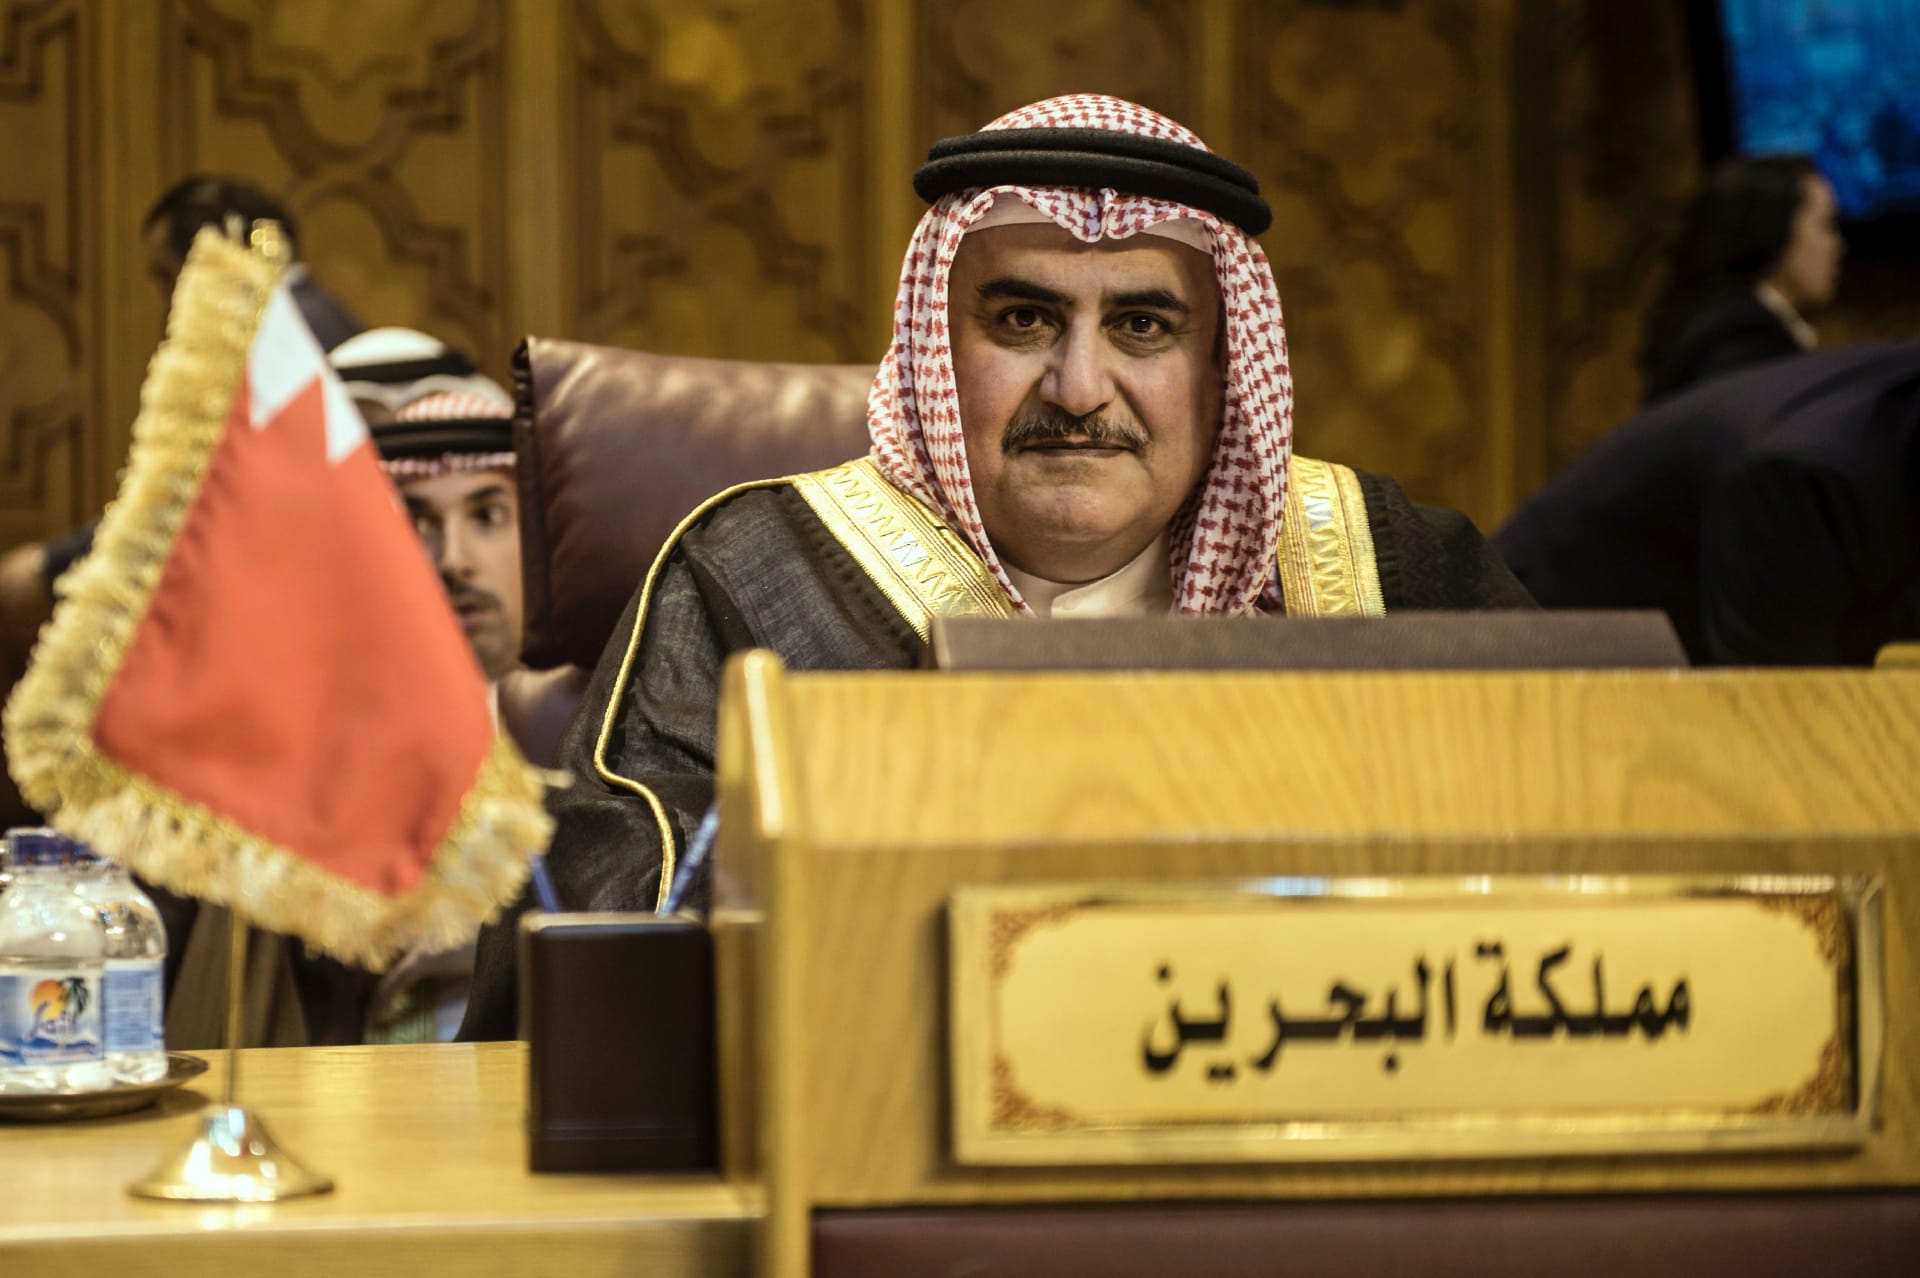 وزير خارجية البحرين عن لقائه بالمعلم: نتعامل مع الدول لا مع من يسقطها